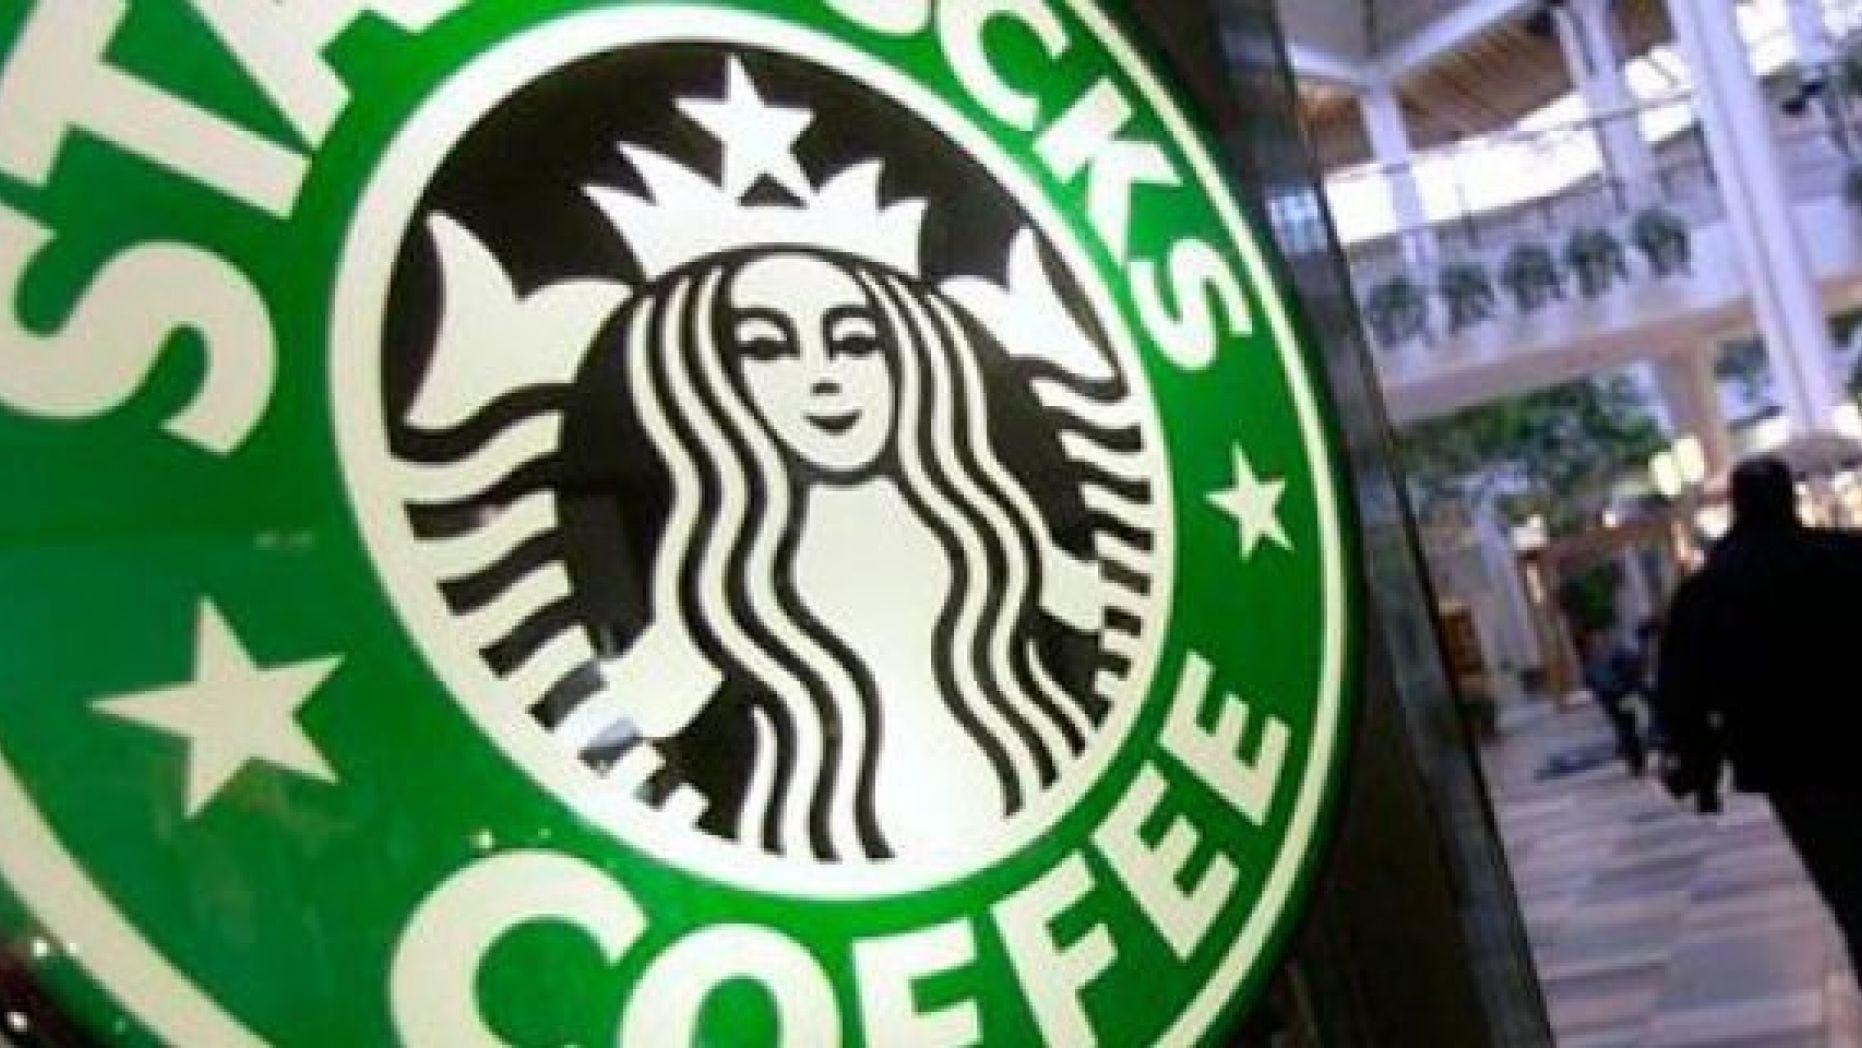 Dumb Starbucks Logo - Dumb Starbucks draws the attention of the coffee chain it mocks ...